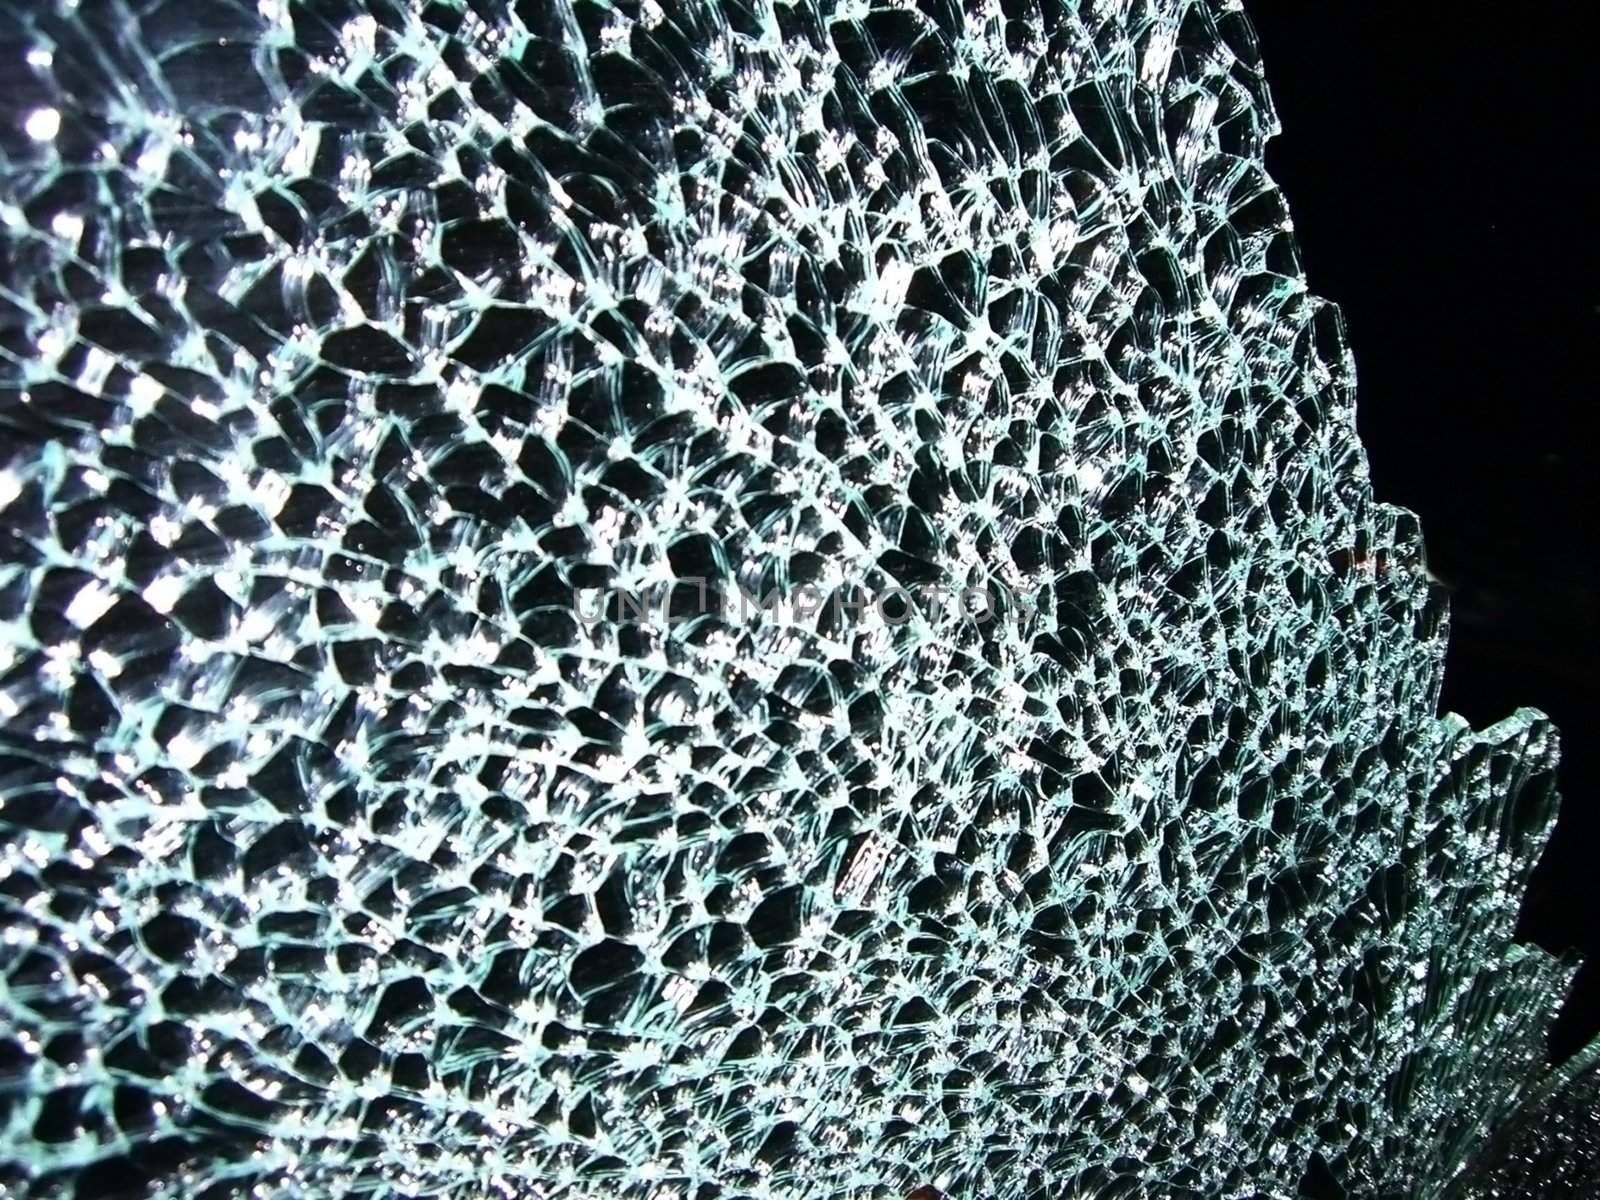 Razbitov glass on machine, beaten mirror by Viktoha